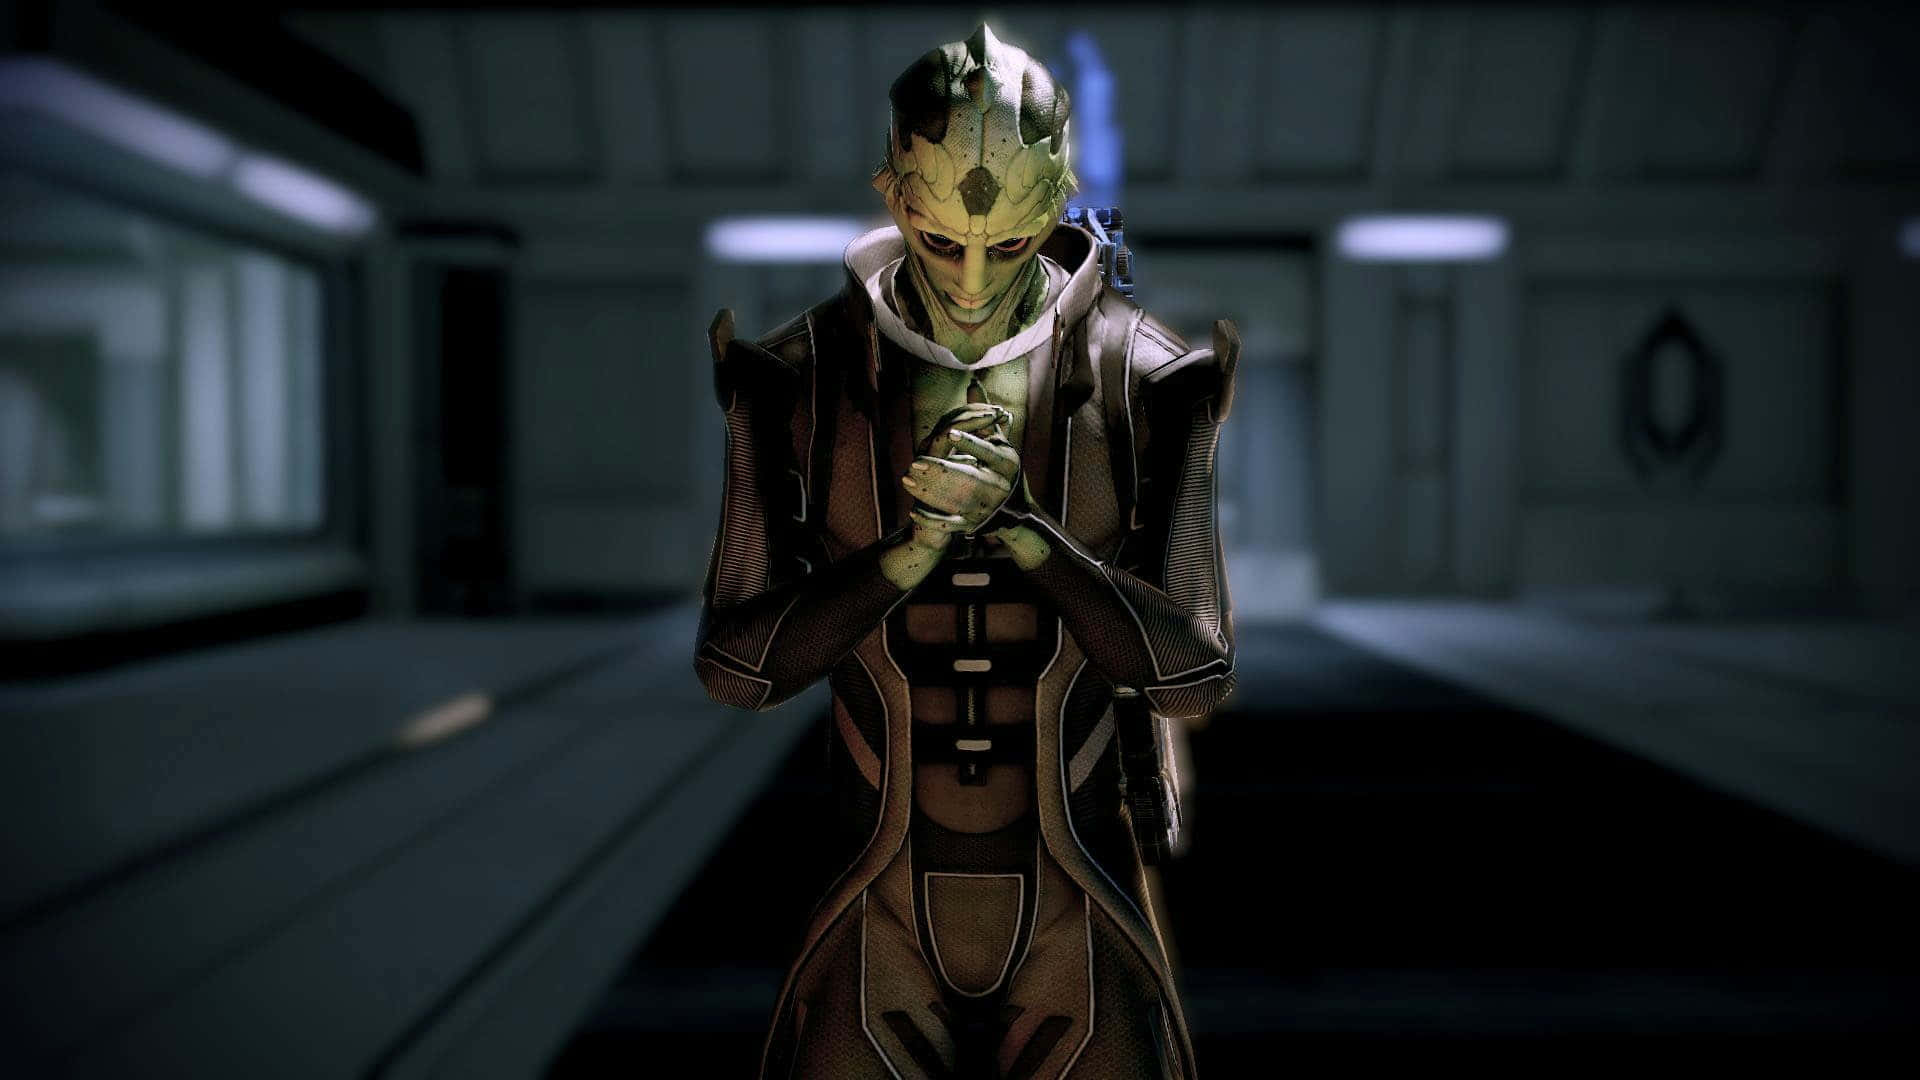 Thane Krios - A Deadly Assassin from Mass Effect 2 Wallpaper